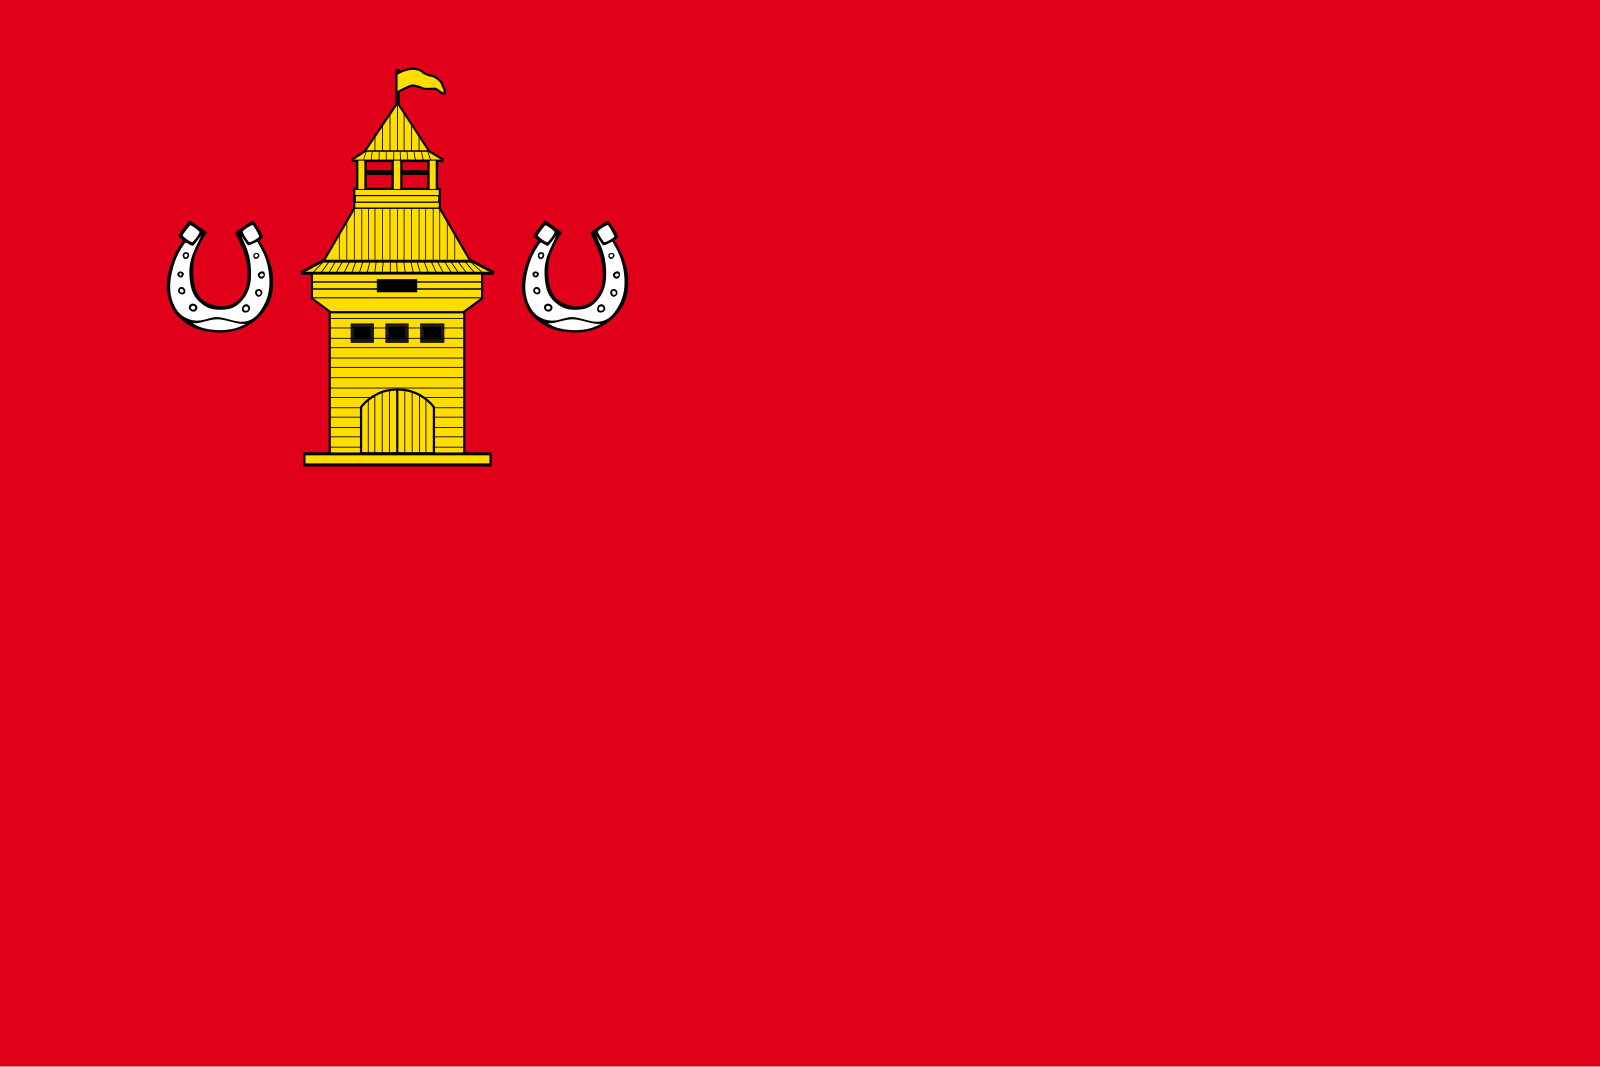 Флаг Шебекинского городского округа.